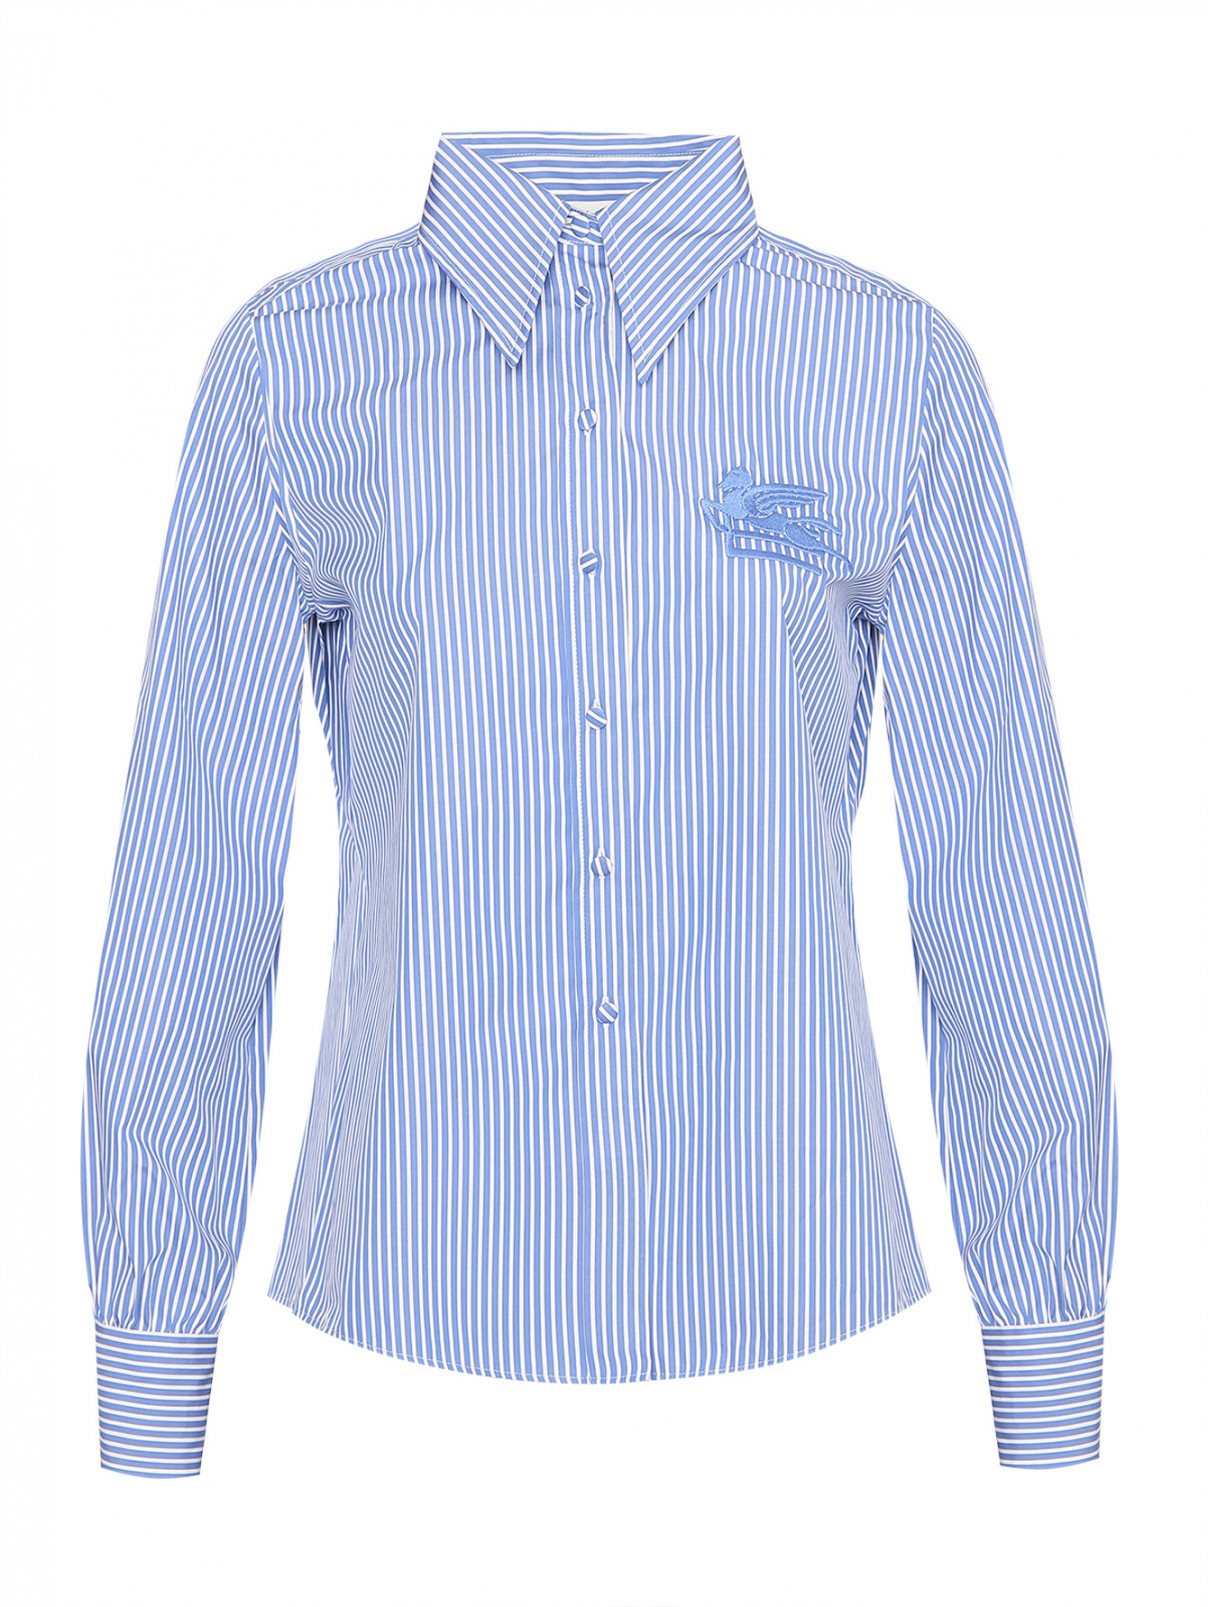 Рубашка из хлопка с аппликацией Etro  –  Общий вид  – Цвет:  Синий